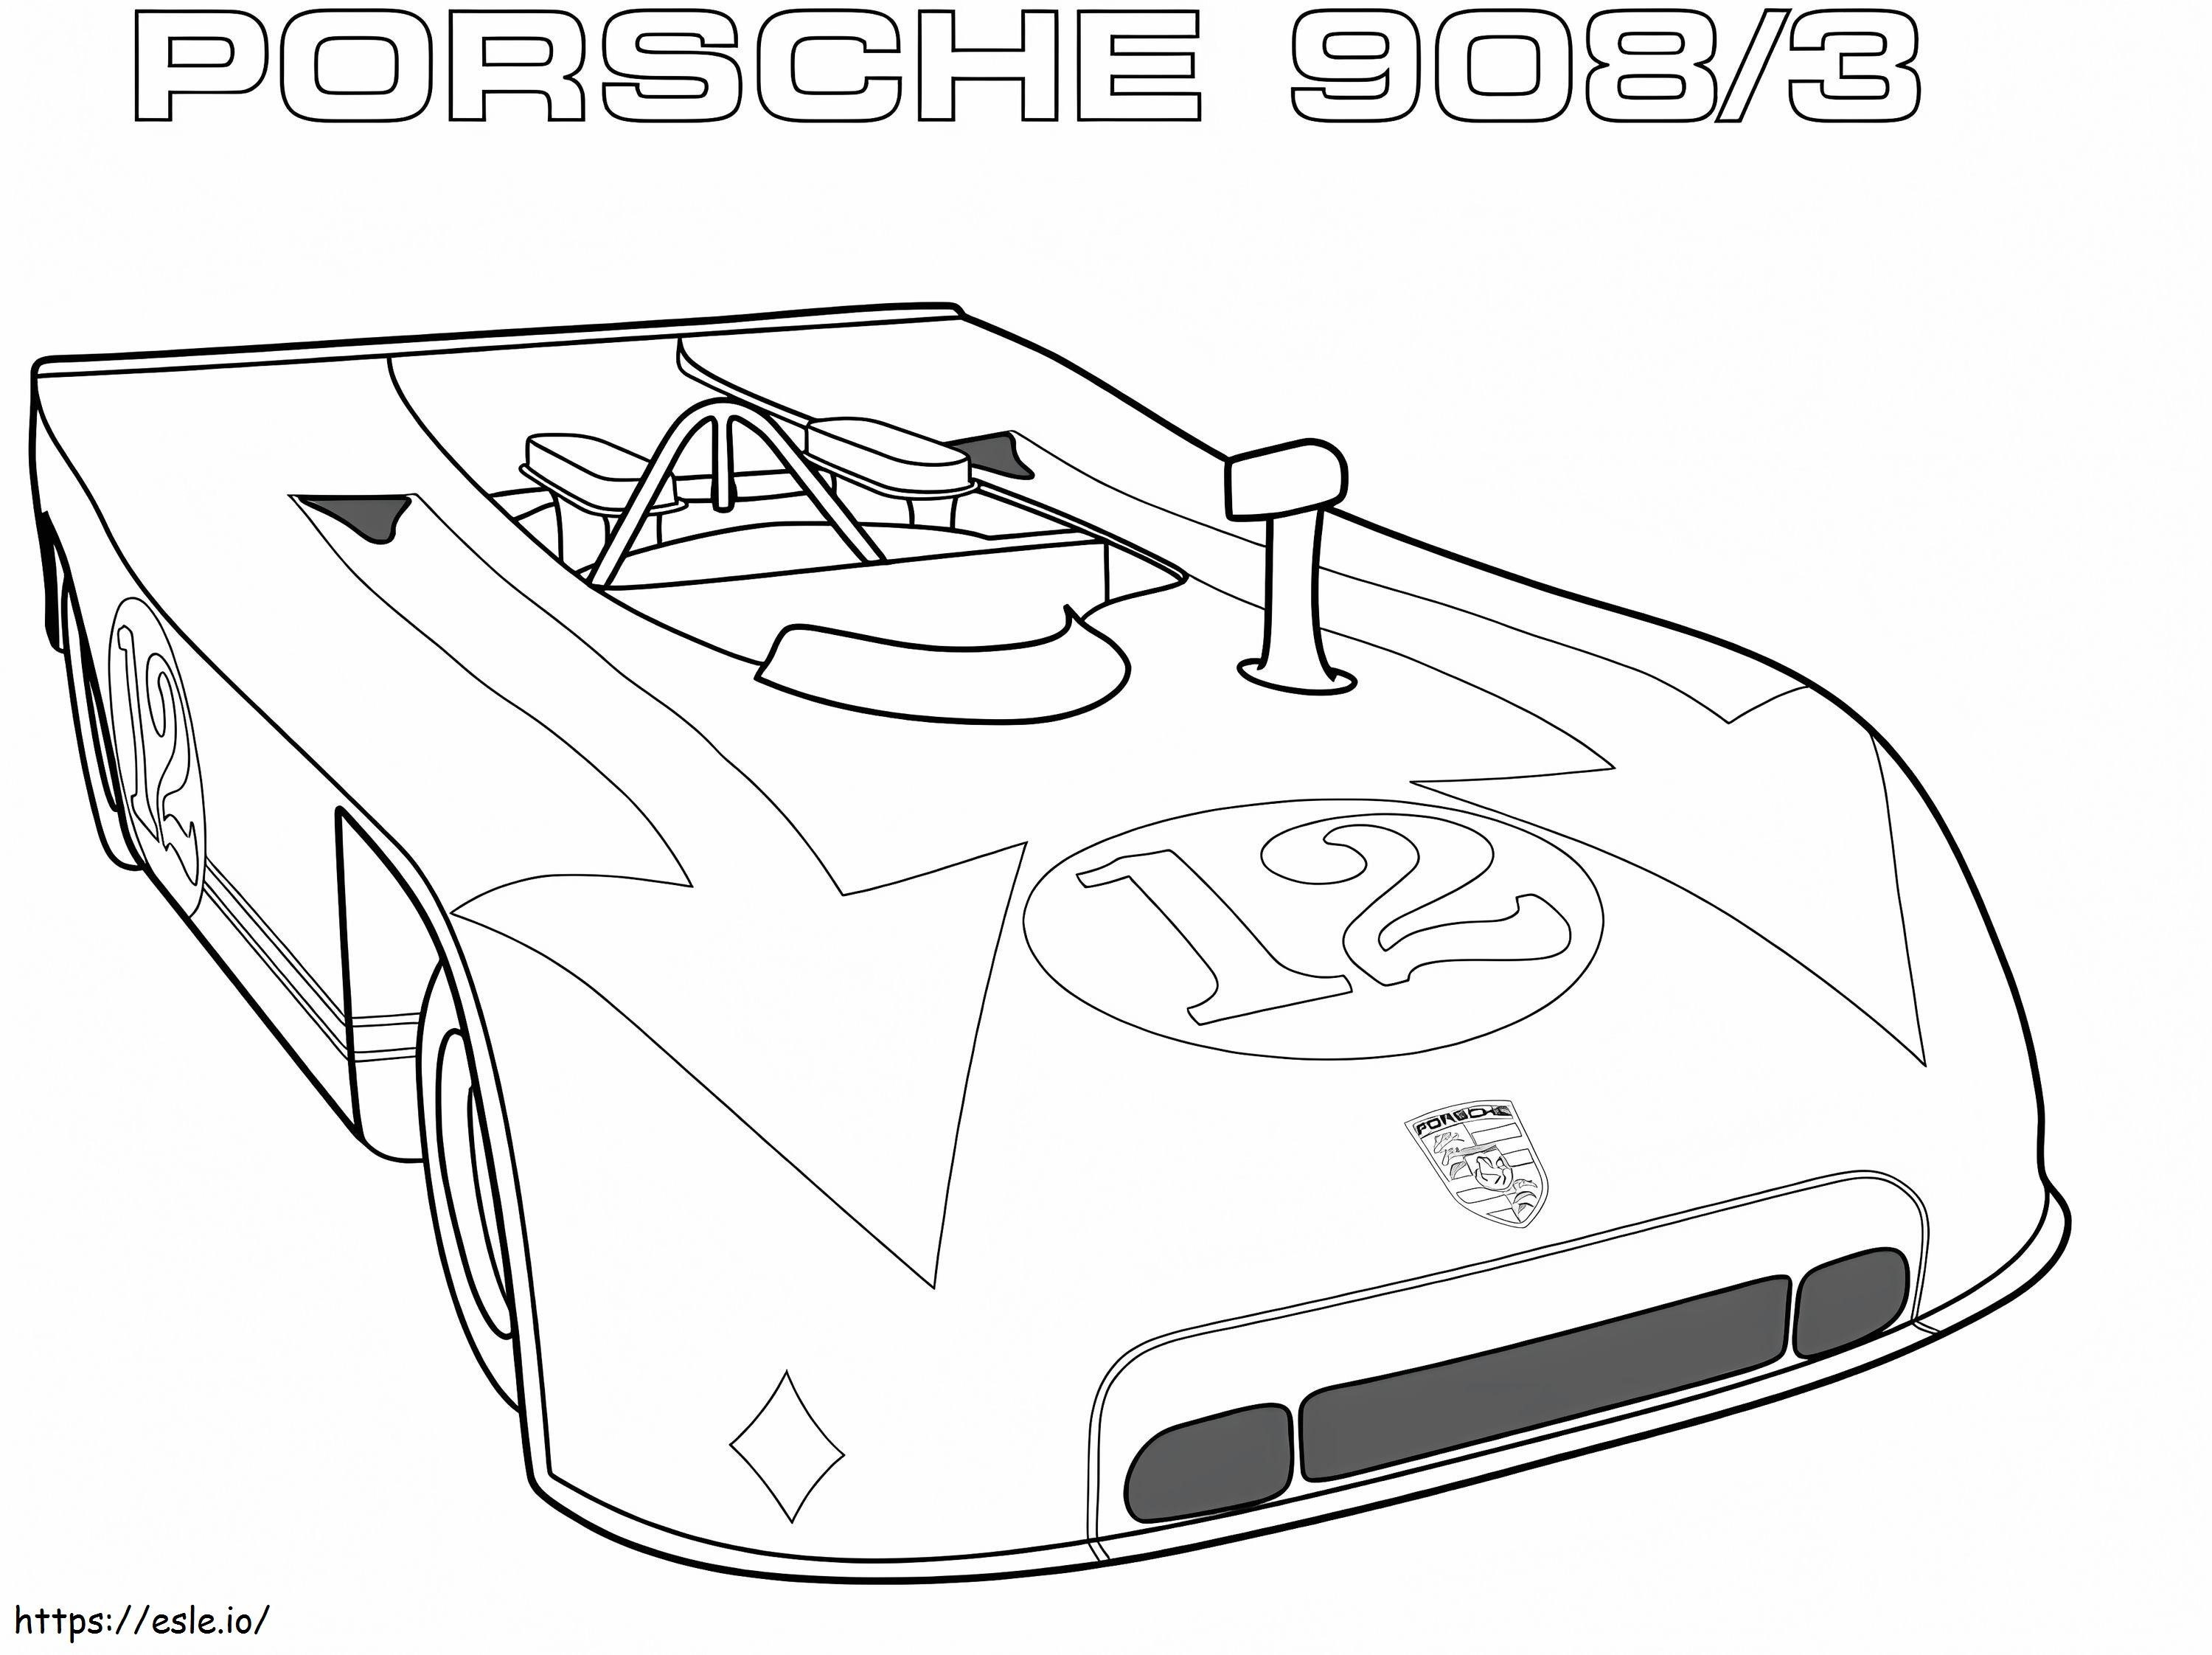  Porsche 9083 värityskuva